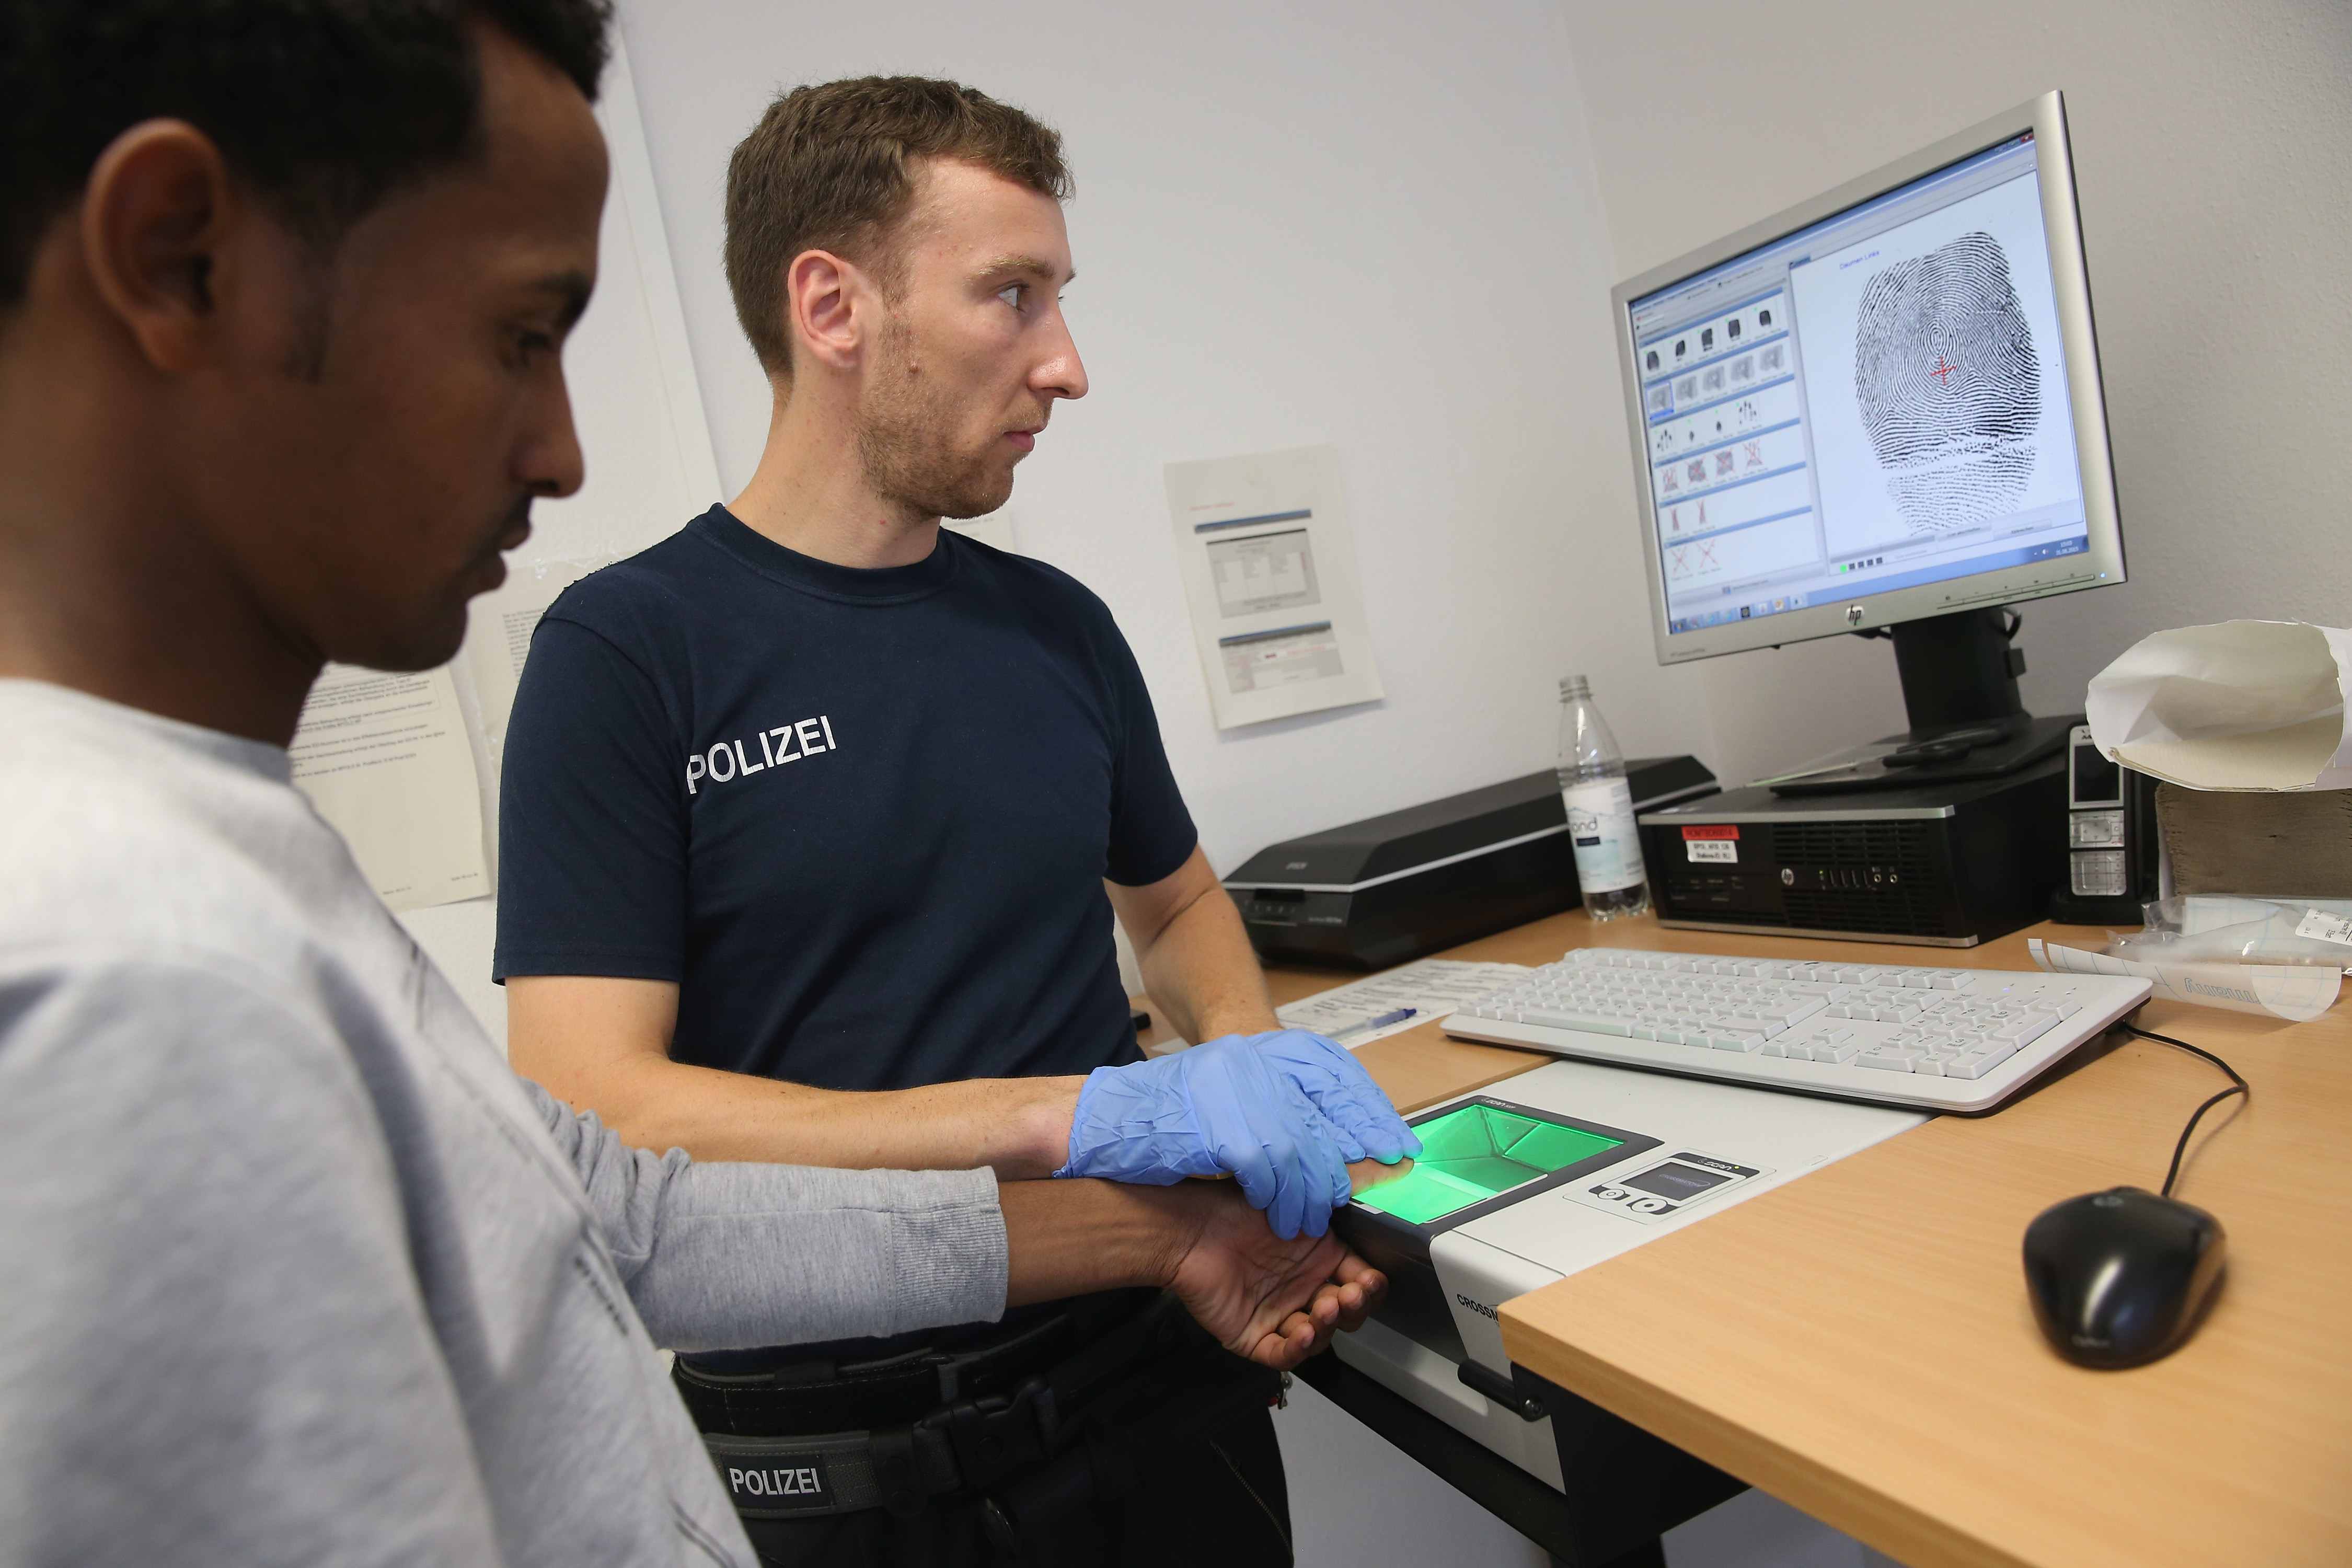 16 Monate nach Flüchtlingswelle: „Fingerabdrucksystem funktioniert endlich“ – Bis zu 12-fach Registrierungen, Millionenschaden angerichtet